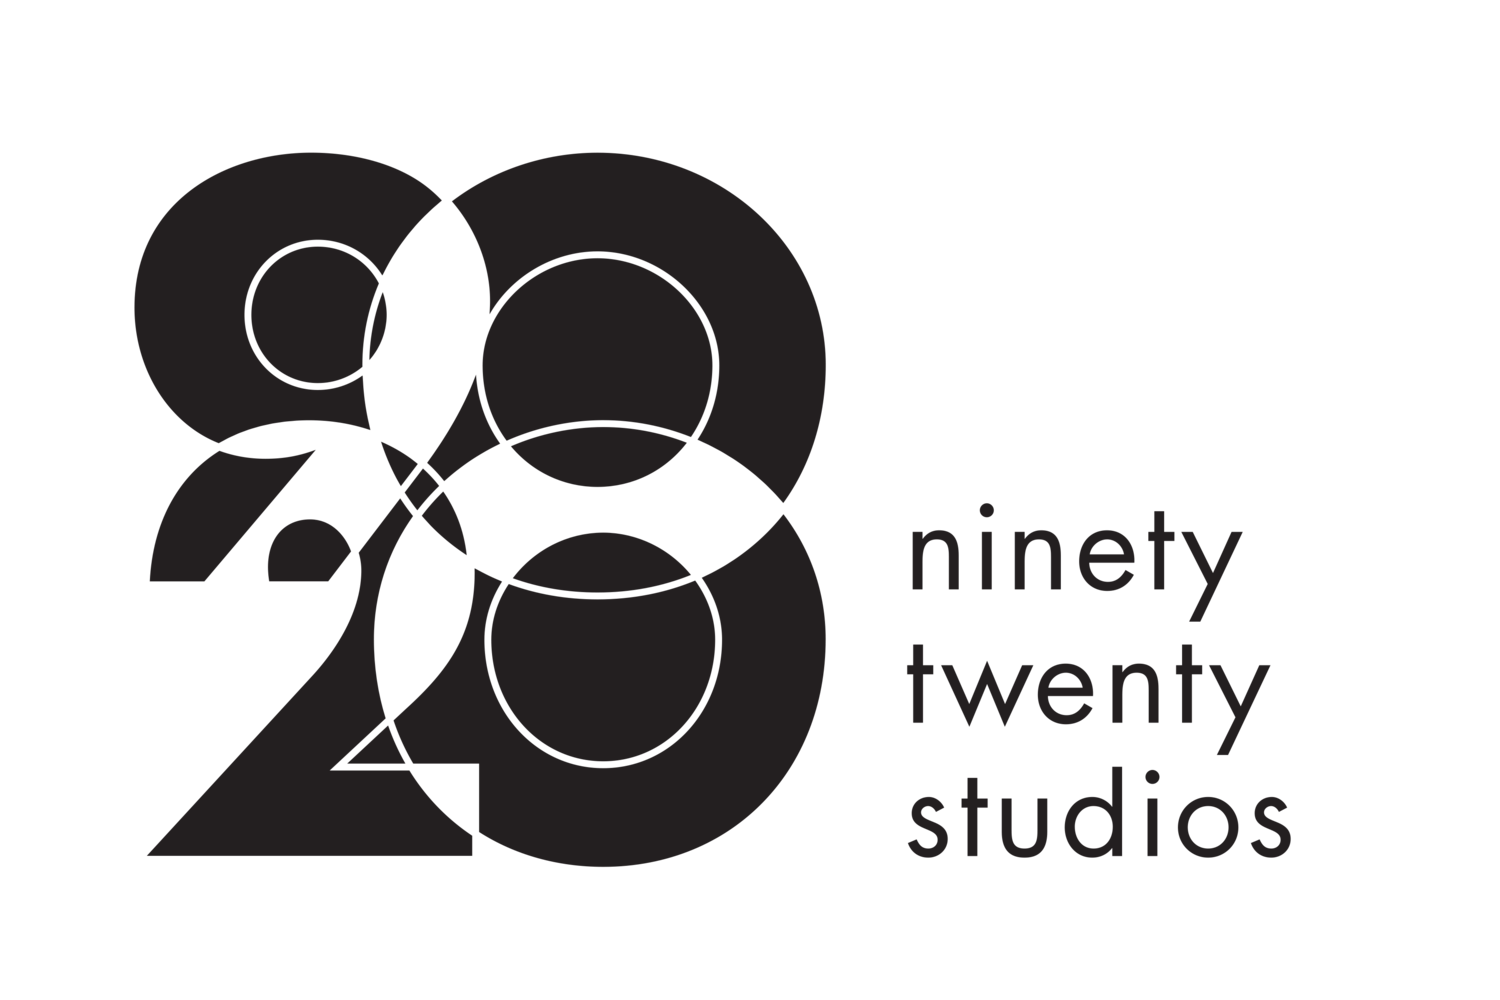 Ninety-Twenty Studios